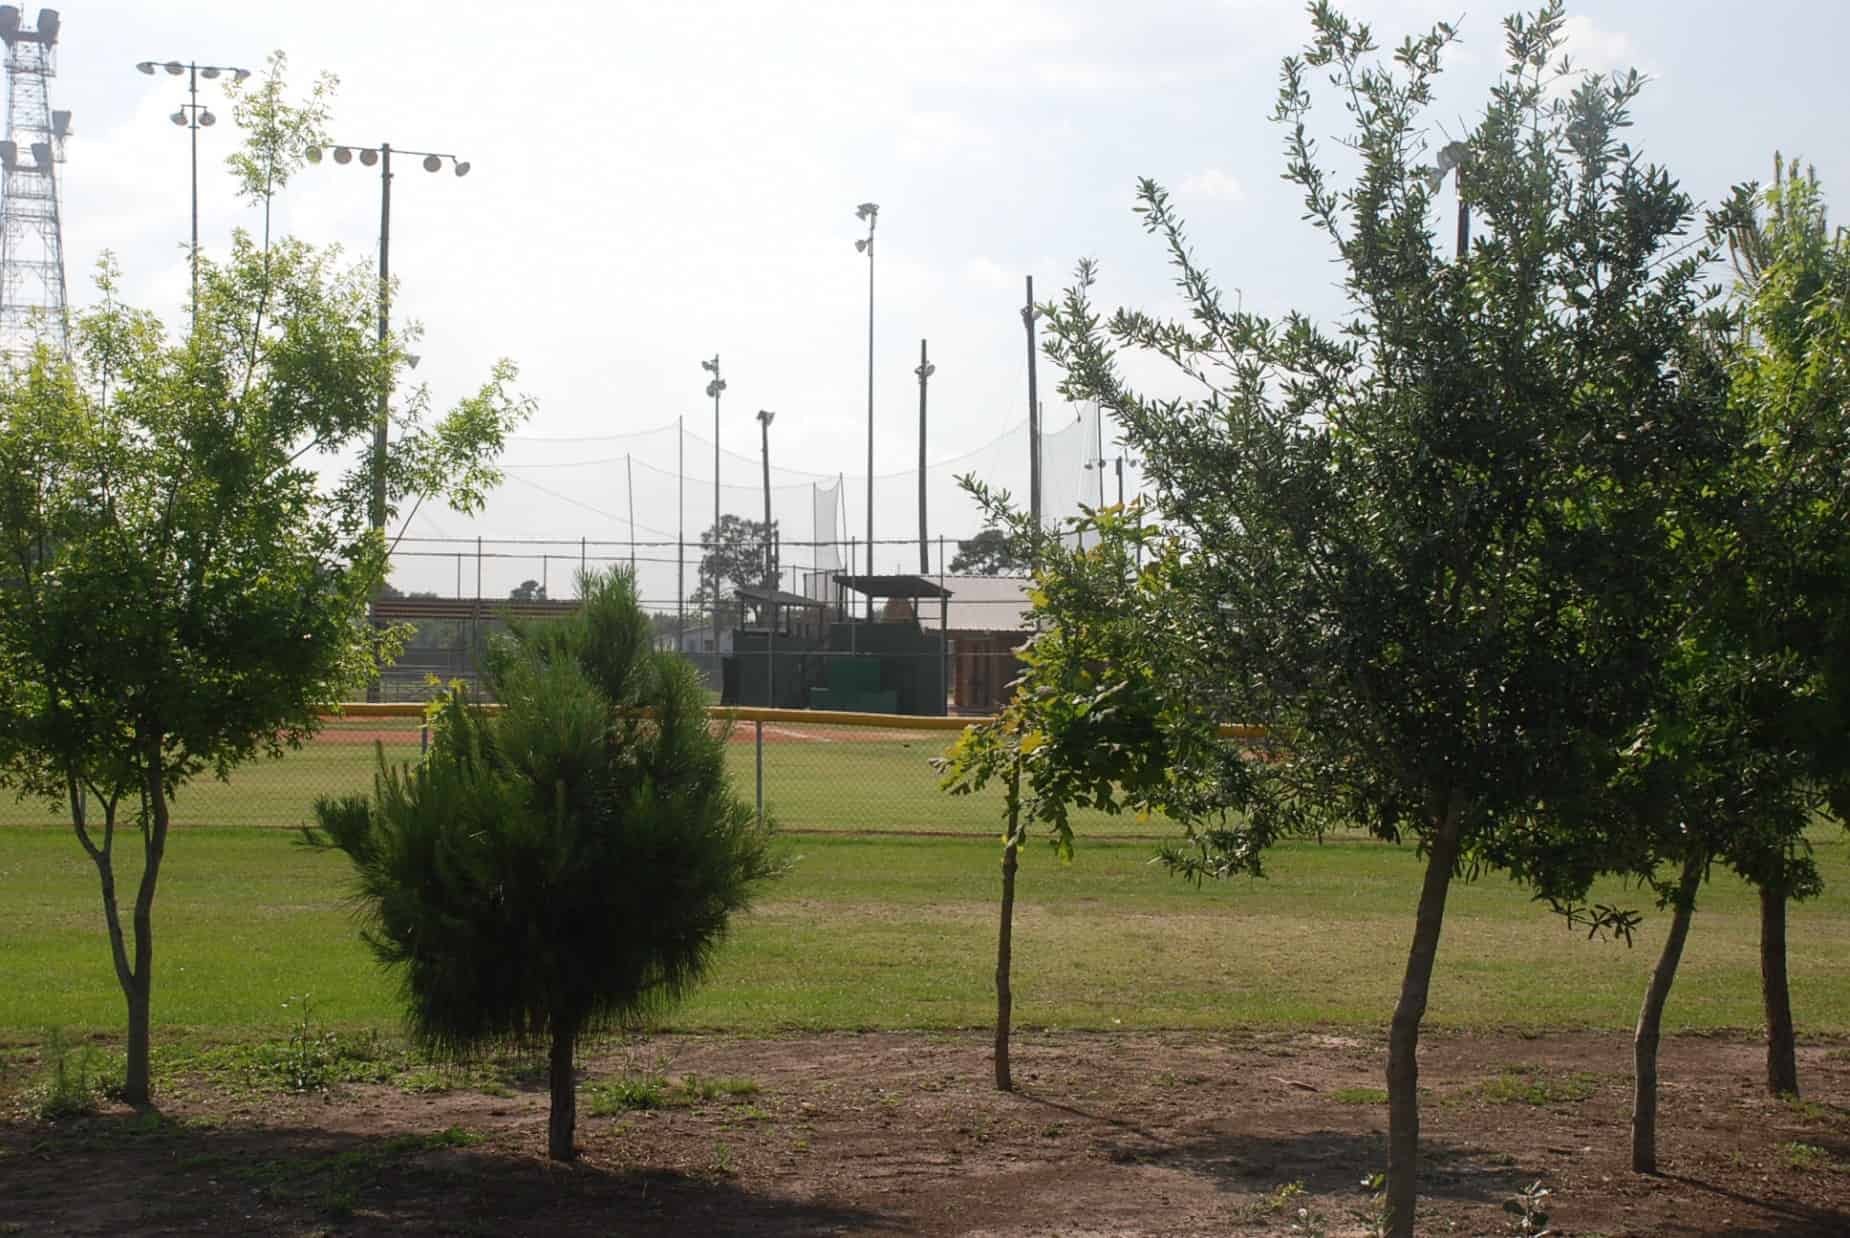 Baseball fields at Katy Park Katy TX